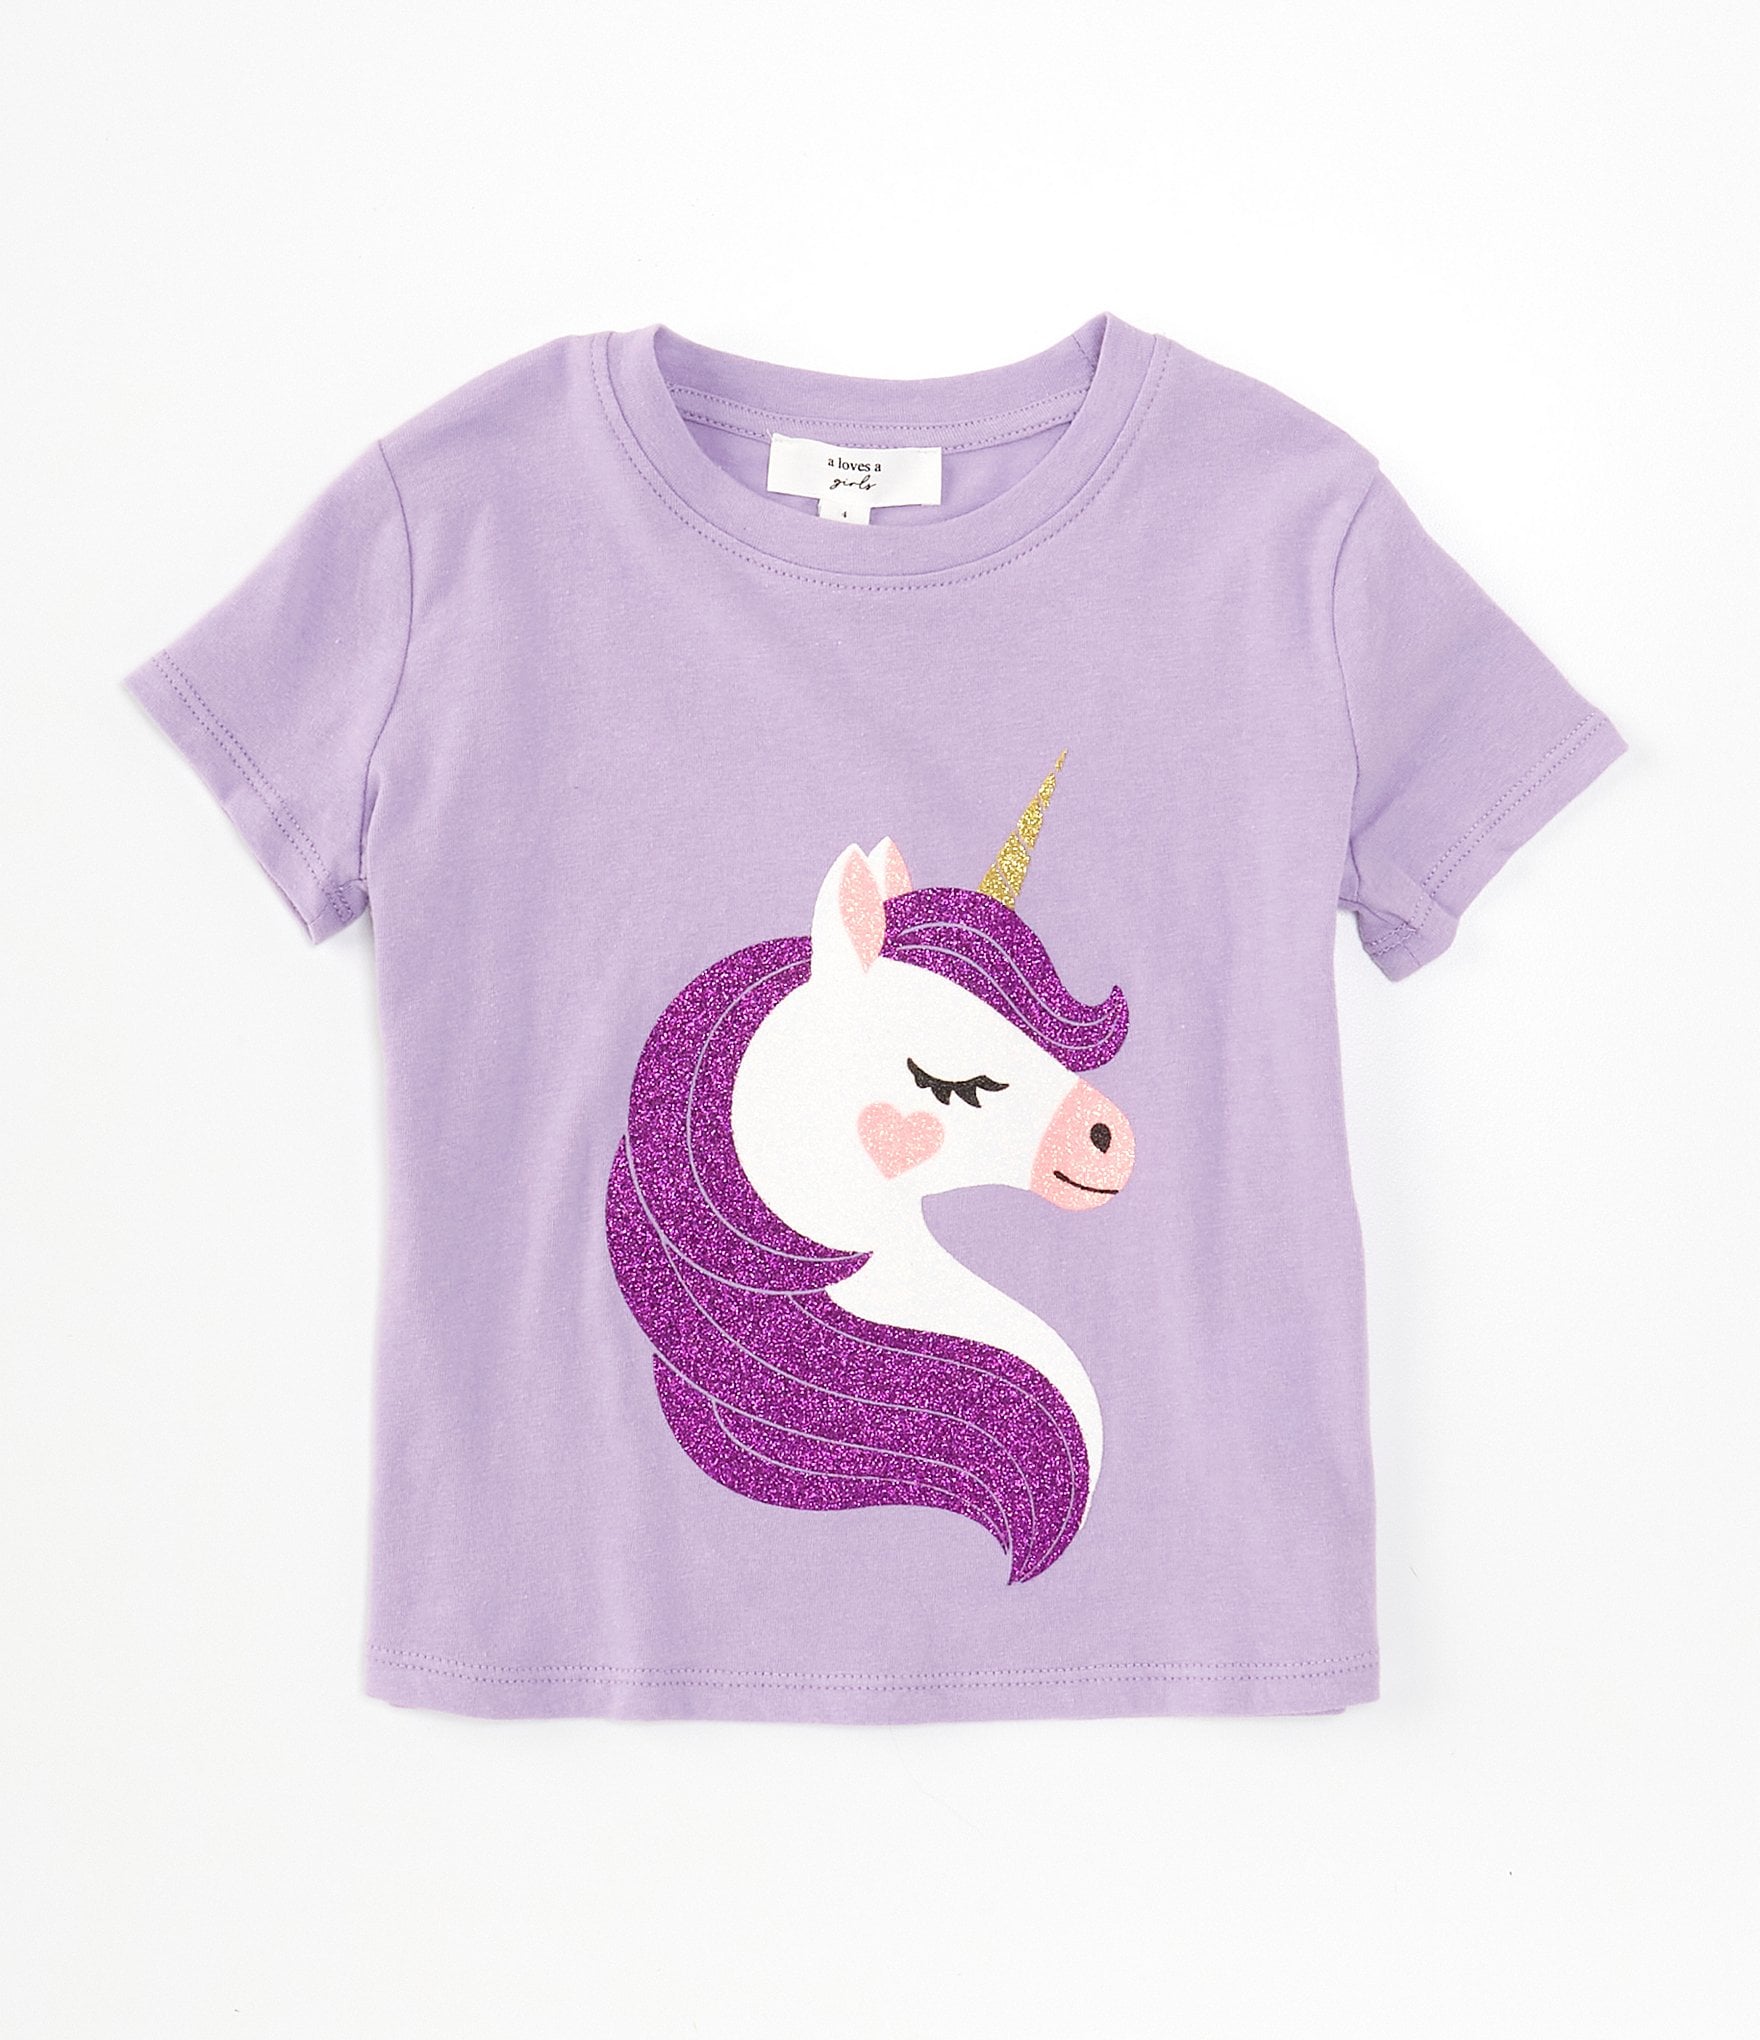 Unicorn Designed T-shirt for Little Girls - Kid Loves Toys